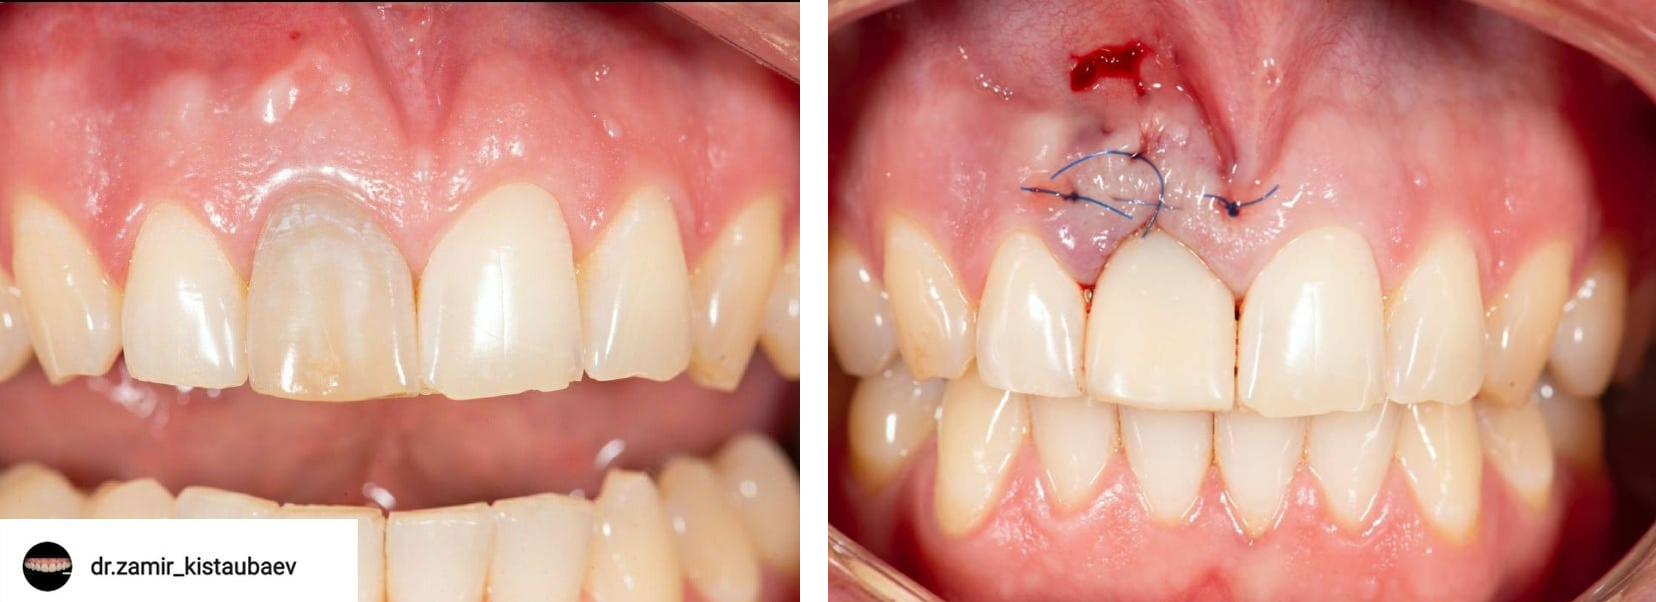 Клинический случай @dr.zamir_kistaubaev: удаление треснутого корня зуба с одномоментной имплантацией AnyRidge